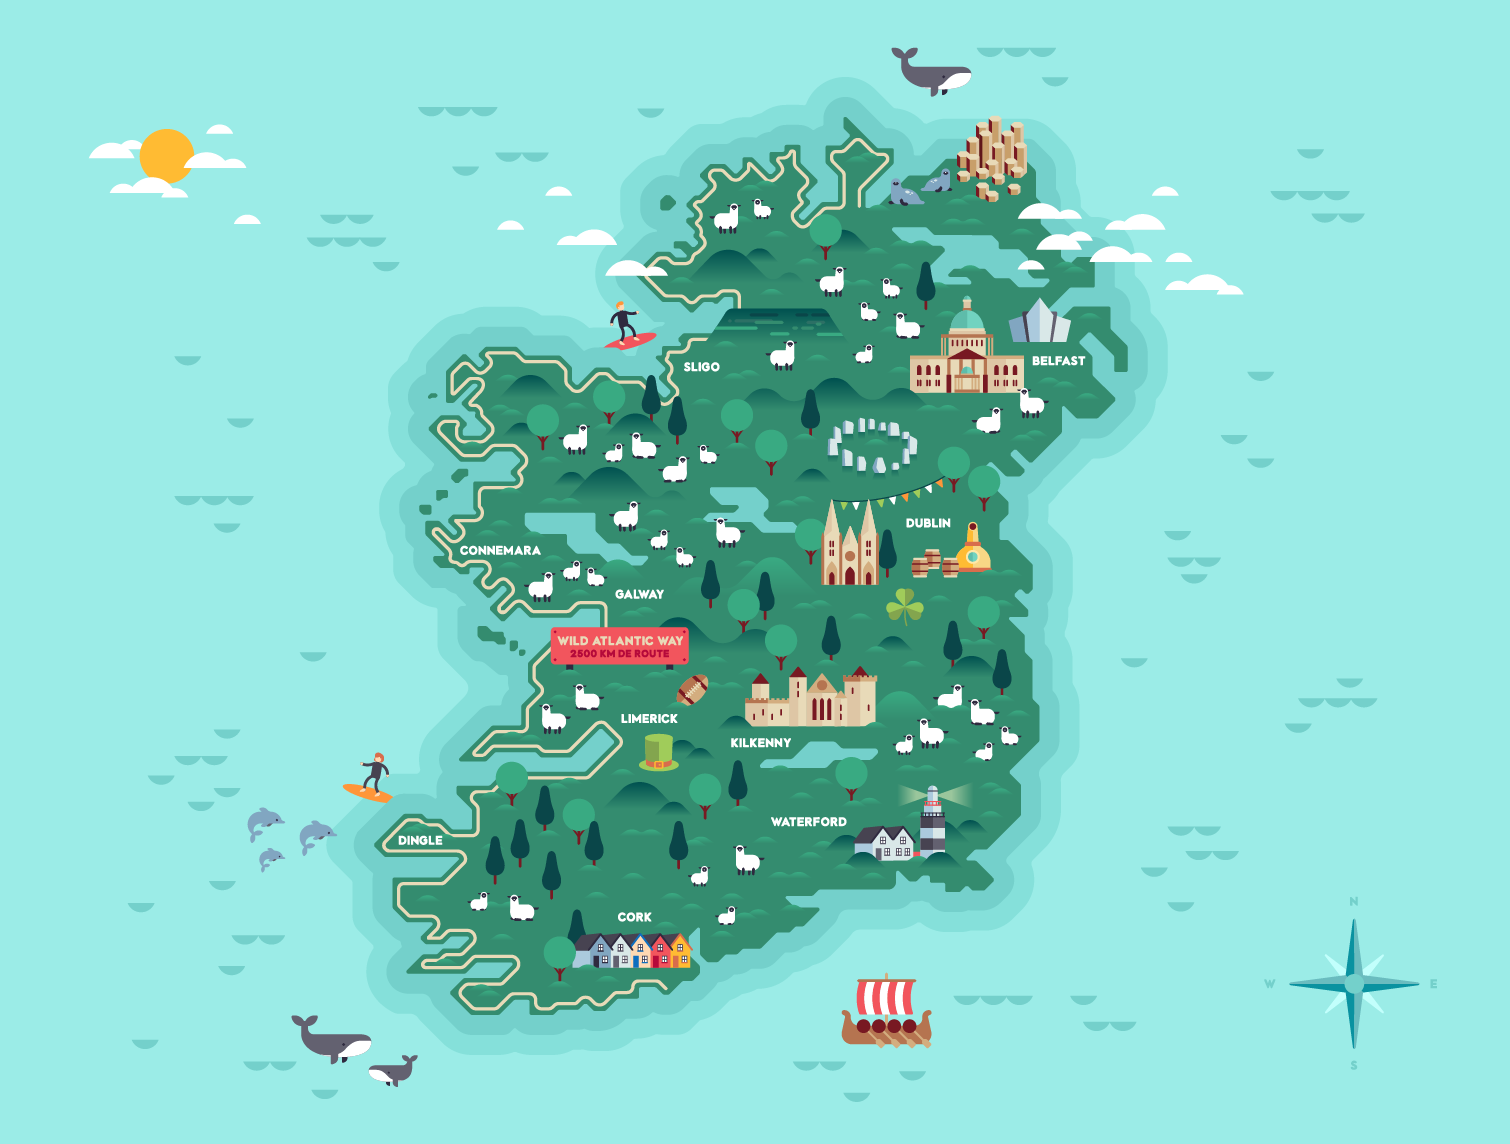 Roadtrip de 4 jours en Irlande (Itinéraire & Conseils) - La Poze